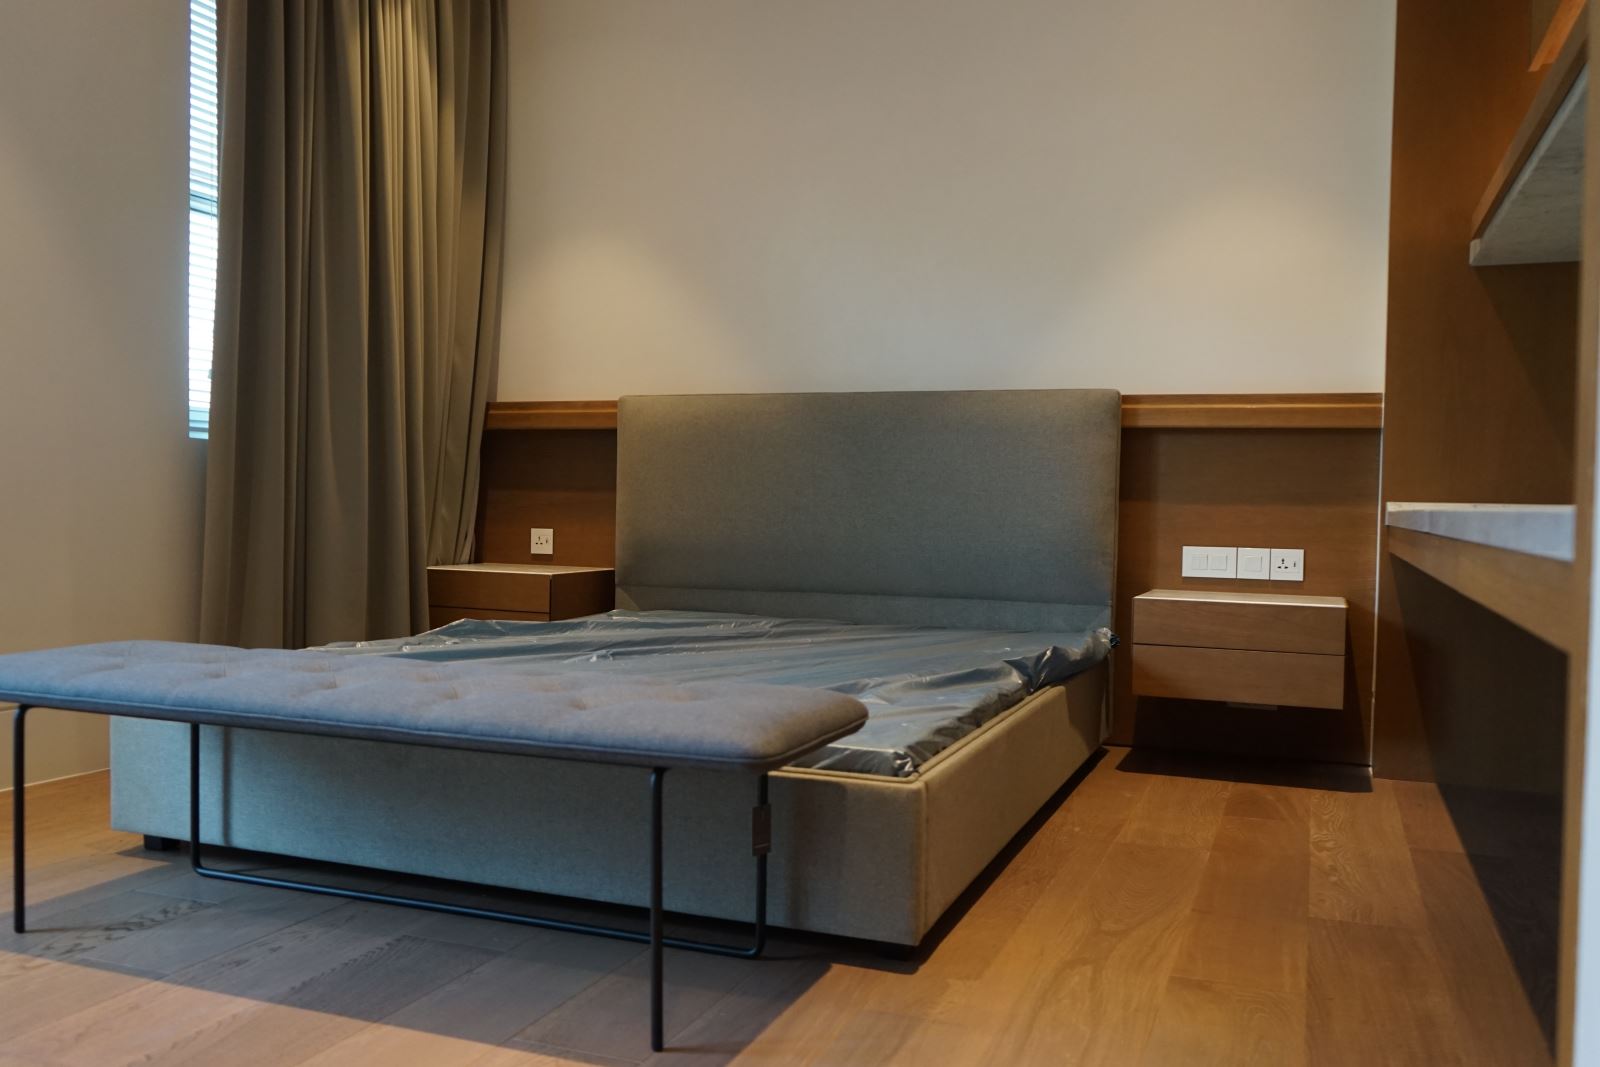 Cùng Triệu Gia tham khảo 4 mẫu kệ trang trí phòng ngủ nổi bật nhất